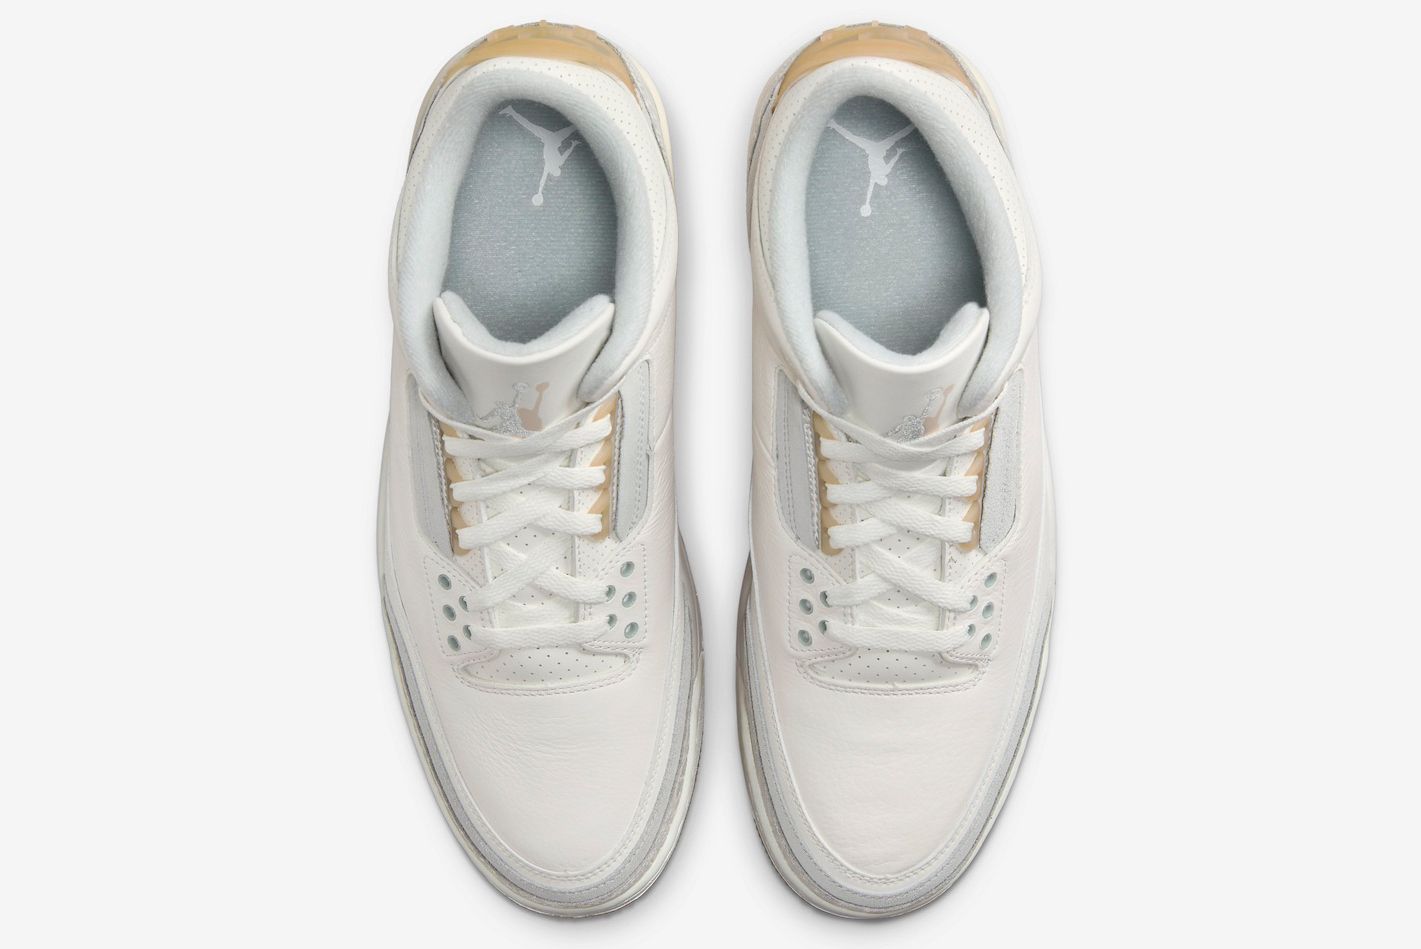 The Air Jordan 3 Craft 'Ivory' Is Coming Soon - Sneaker Freaker